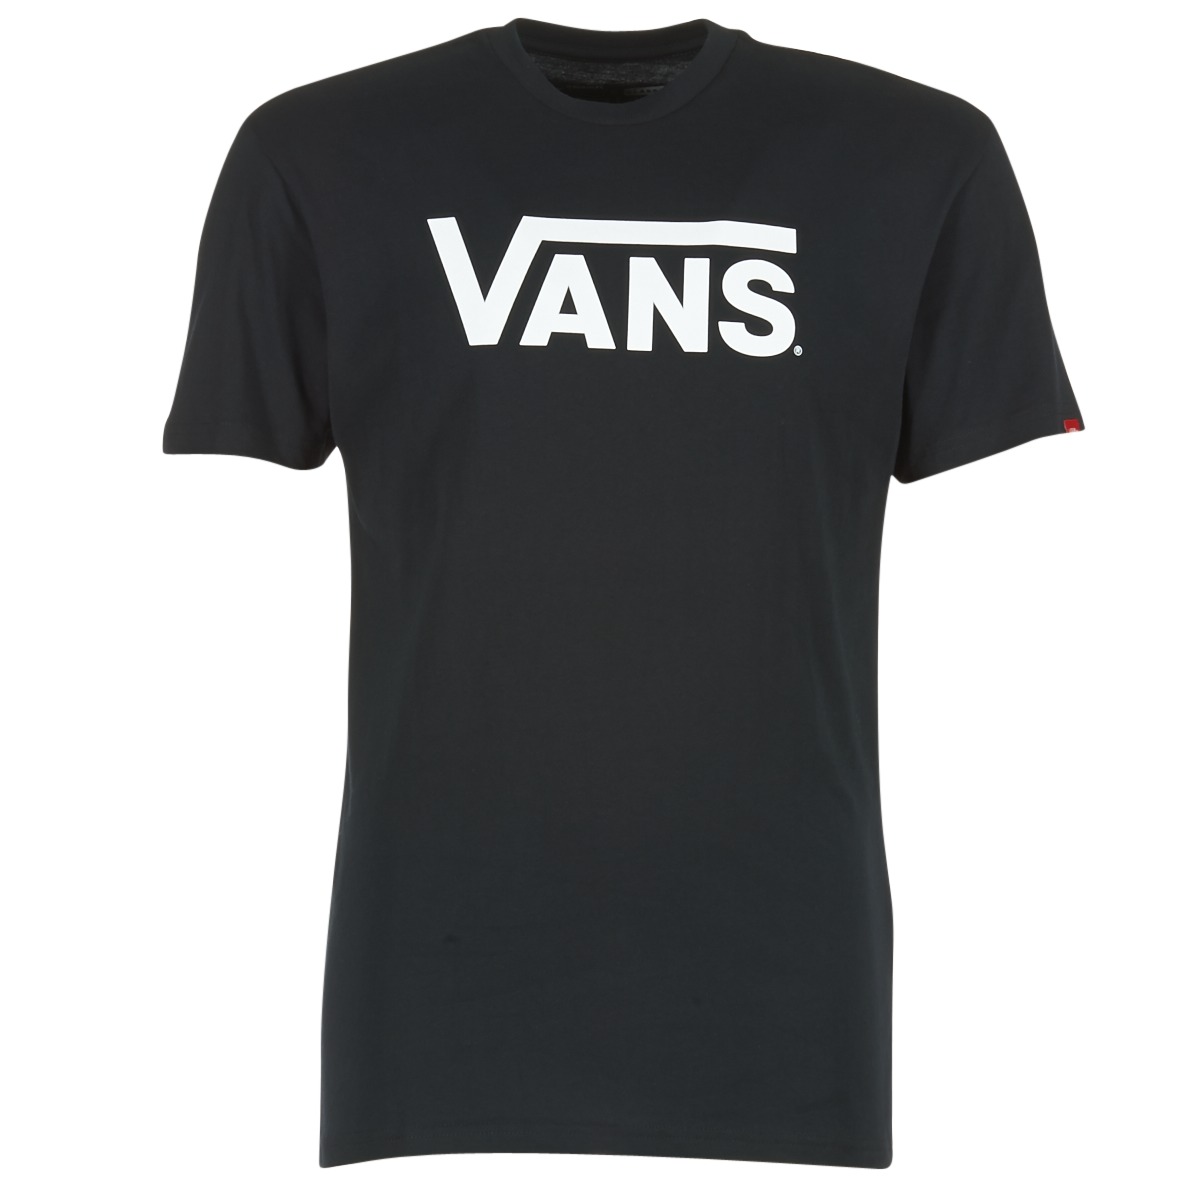 Textil authentic T-Shirt mangas curtas Vans VANS CLASSIC Preto